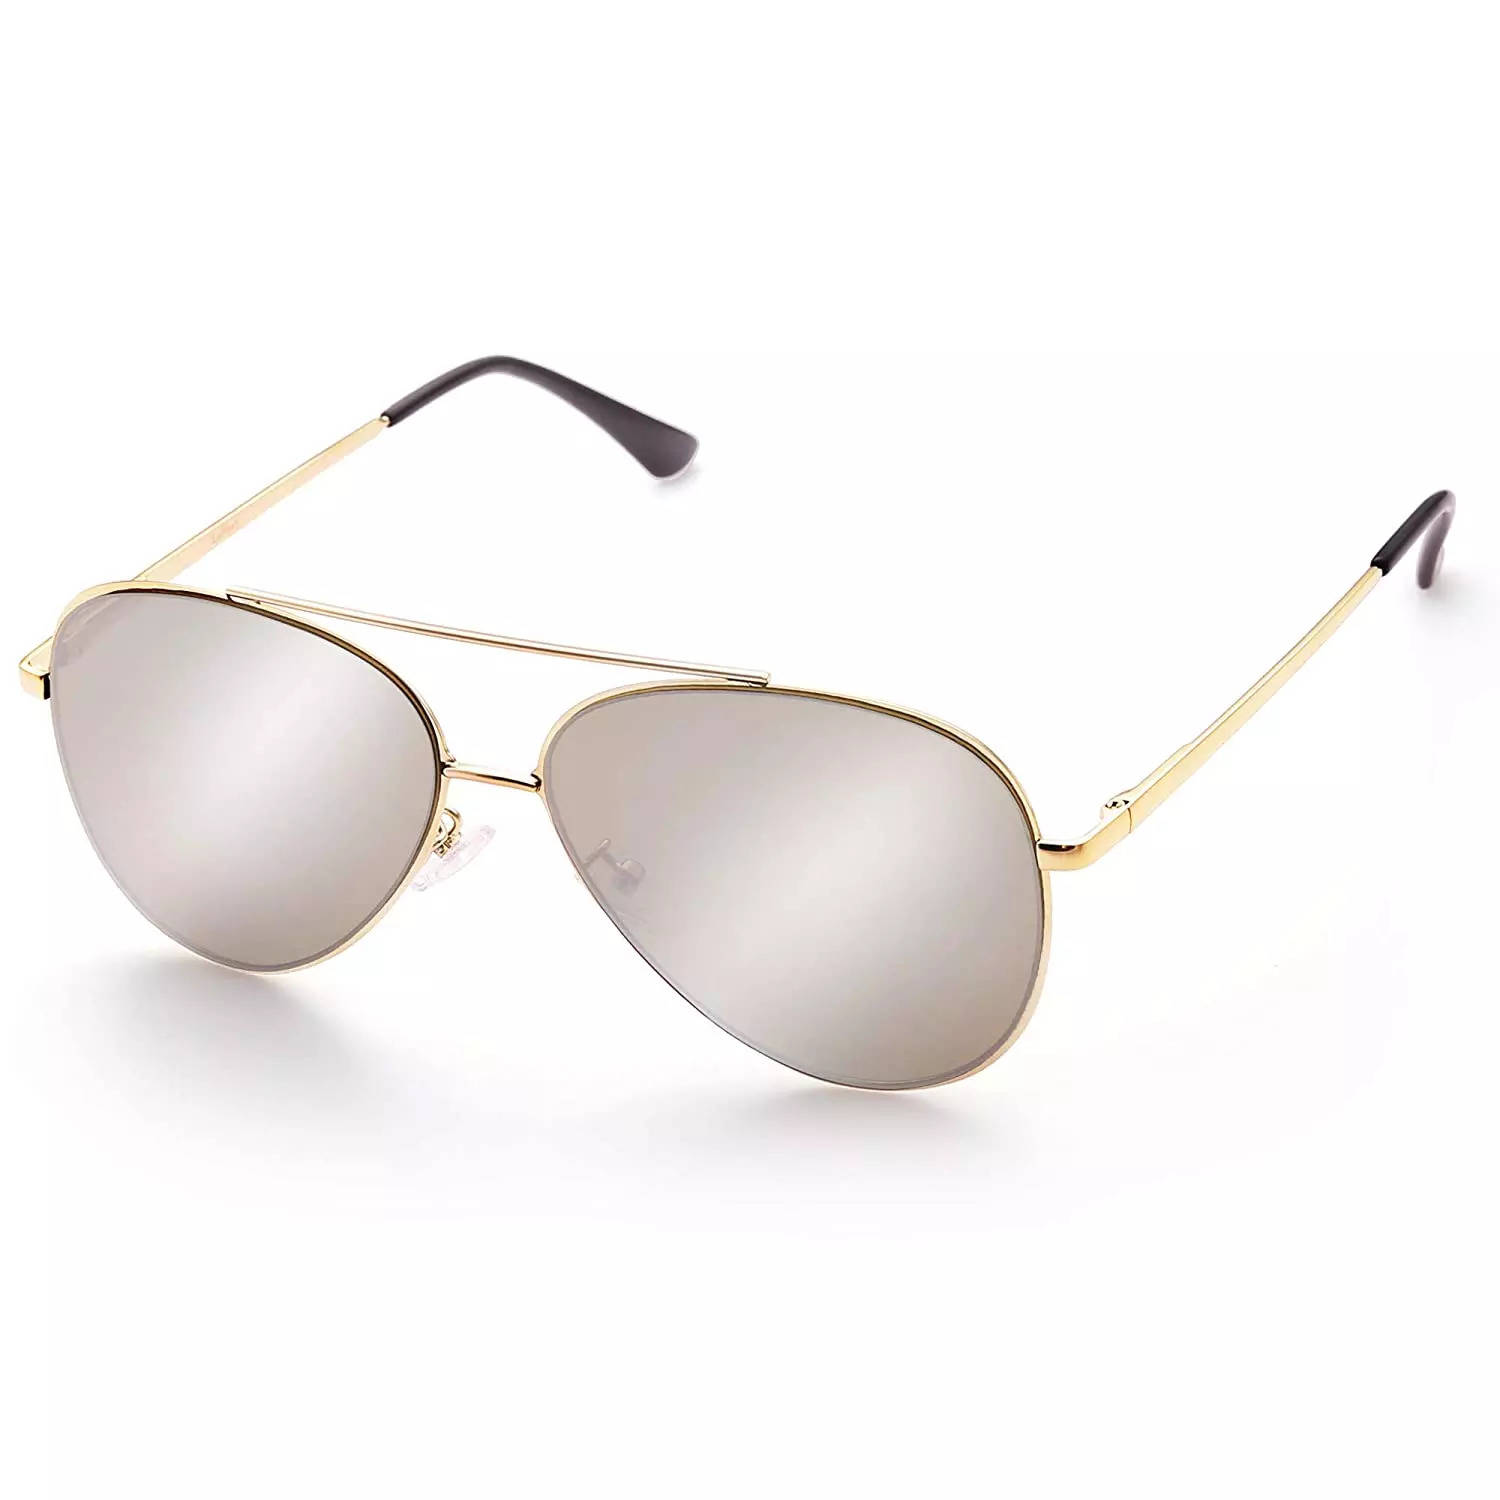 Aviator Sunglasses for Women: 7 Best Aviator Sunglasses for Women for All  Season - The Economic Times